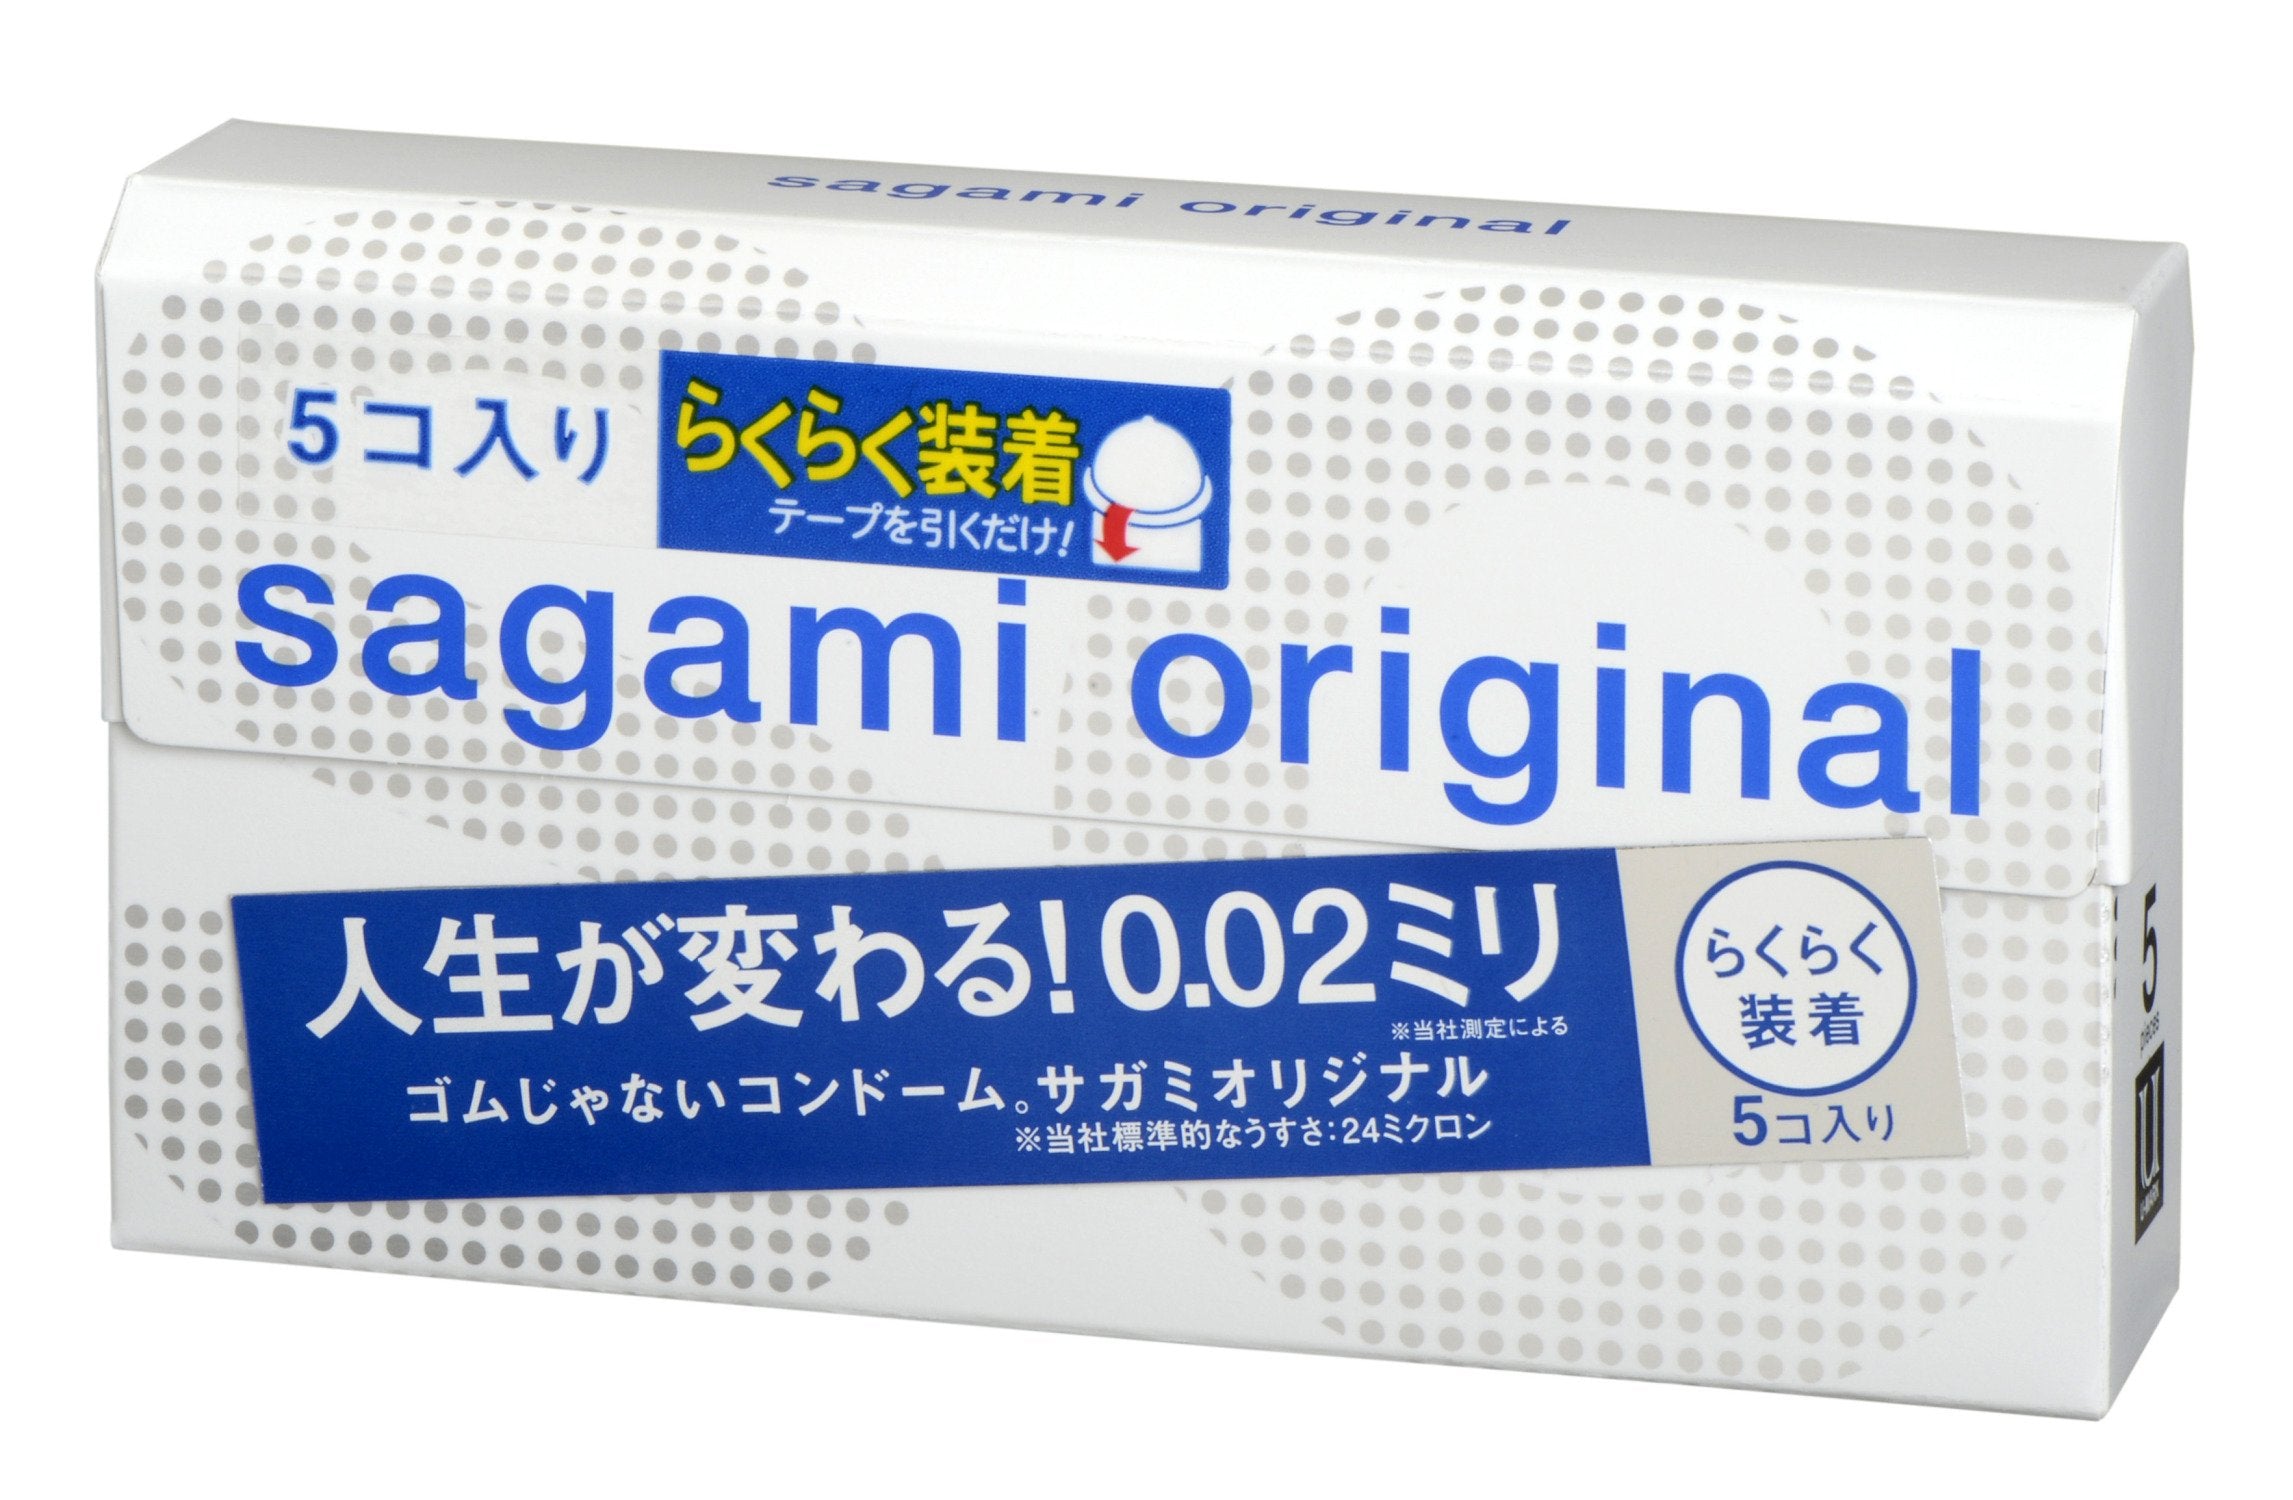 【単品】 サガミオリジナル002クイック コンドーム 薄型 ポリウレタン製 0.02ミリ 5個入 - BanzaiHobby